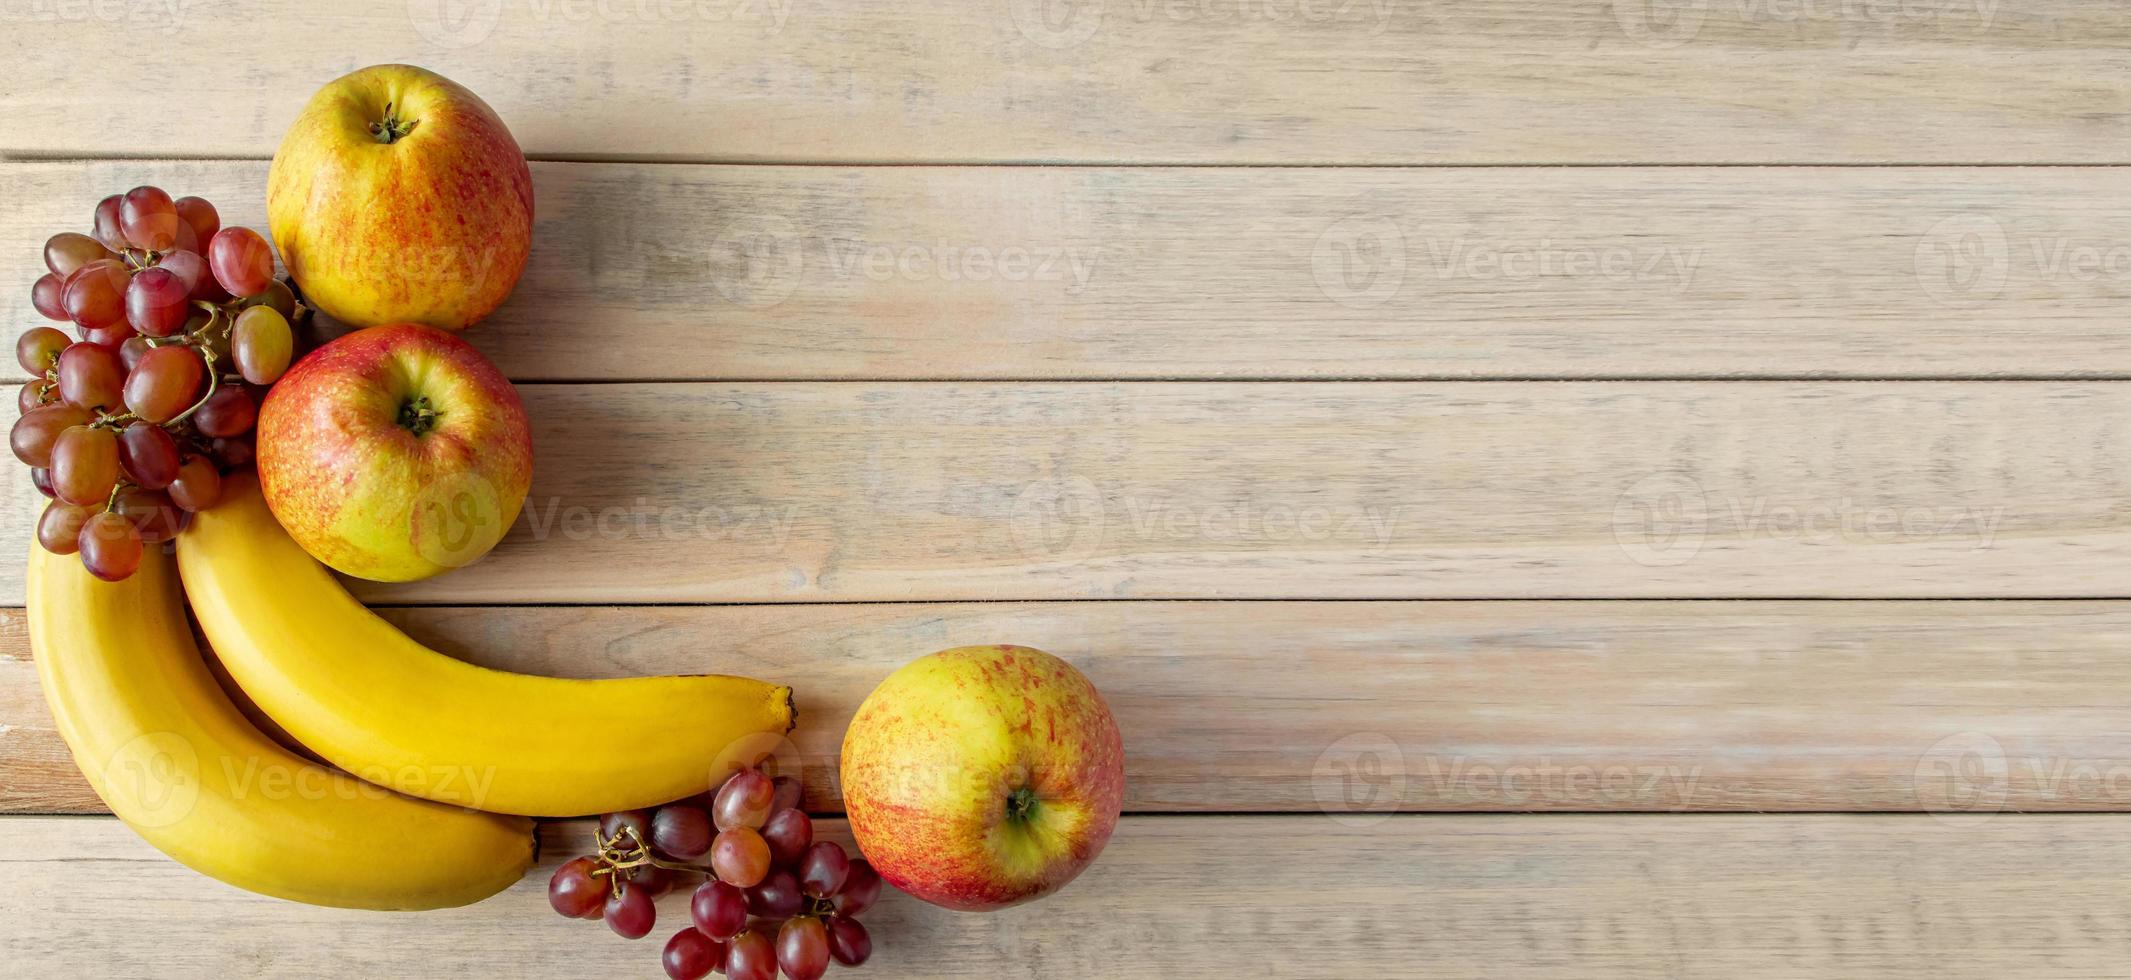 frutas maduras sobre fondo de madera. plátanos, manzanas y uvas. concepto de cosecha. foto